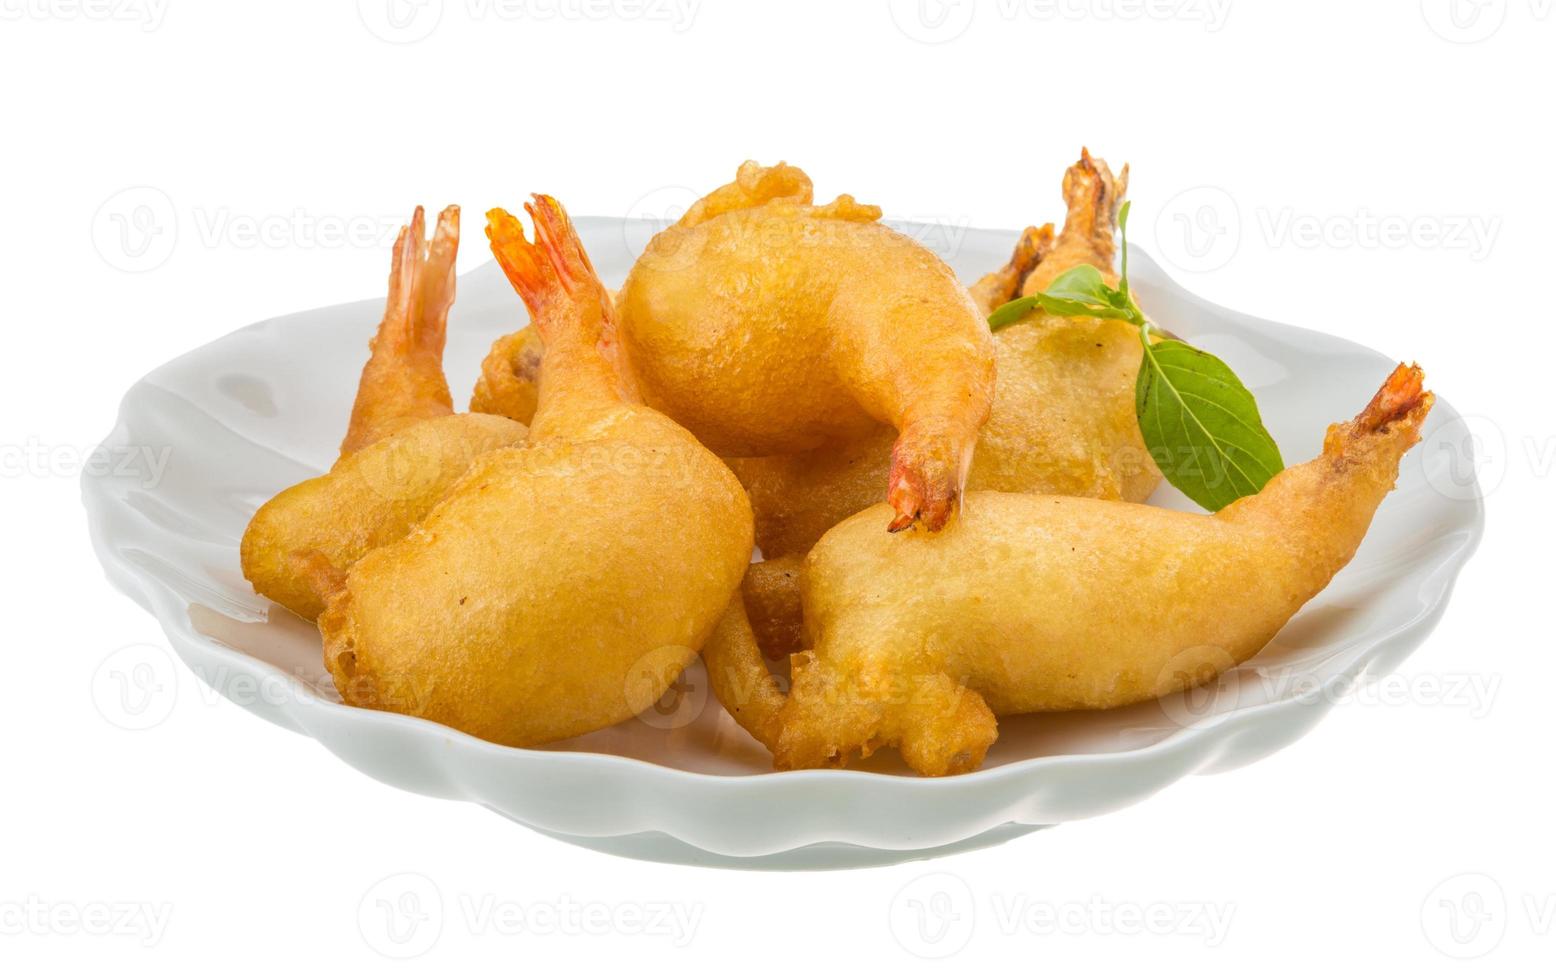 tempura de camarones en el plato y fondo blanco foto